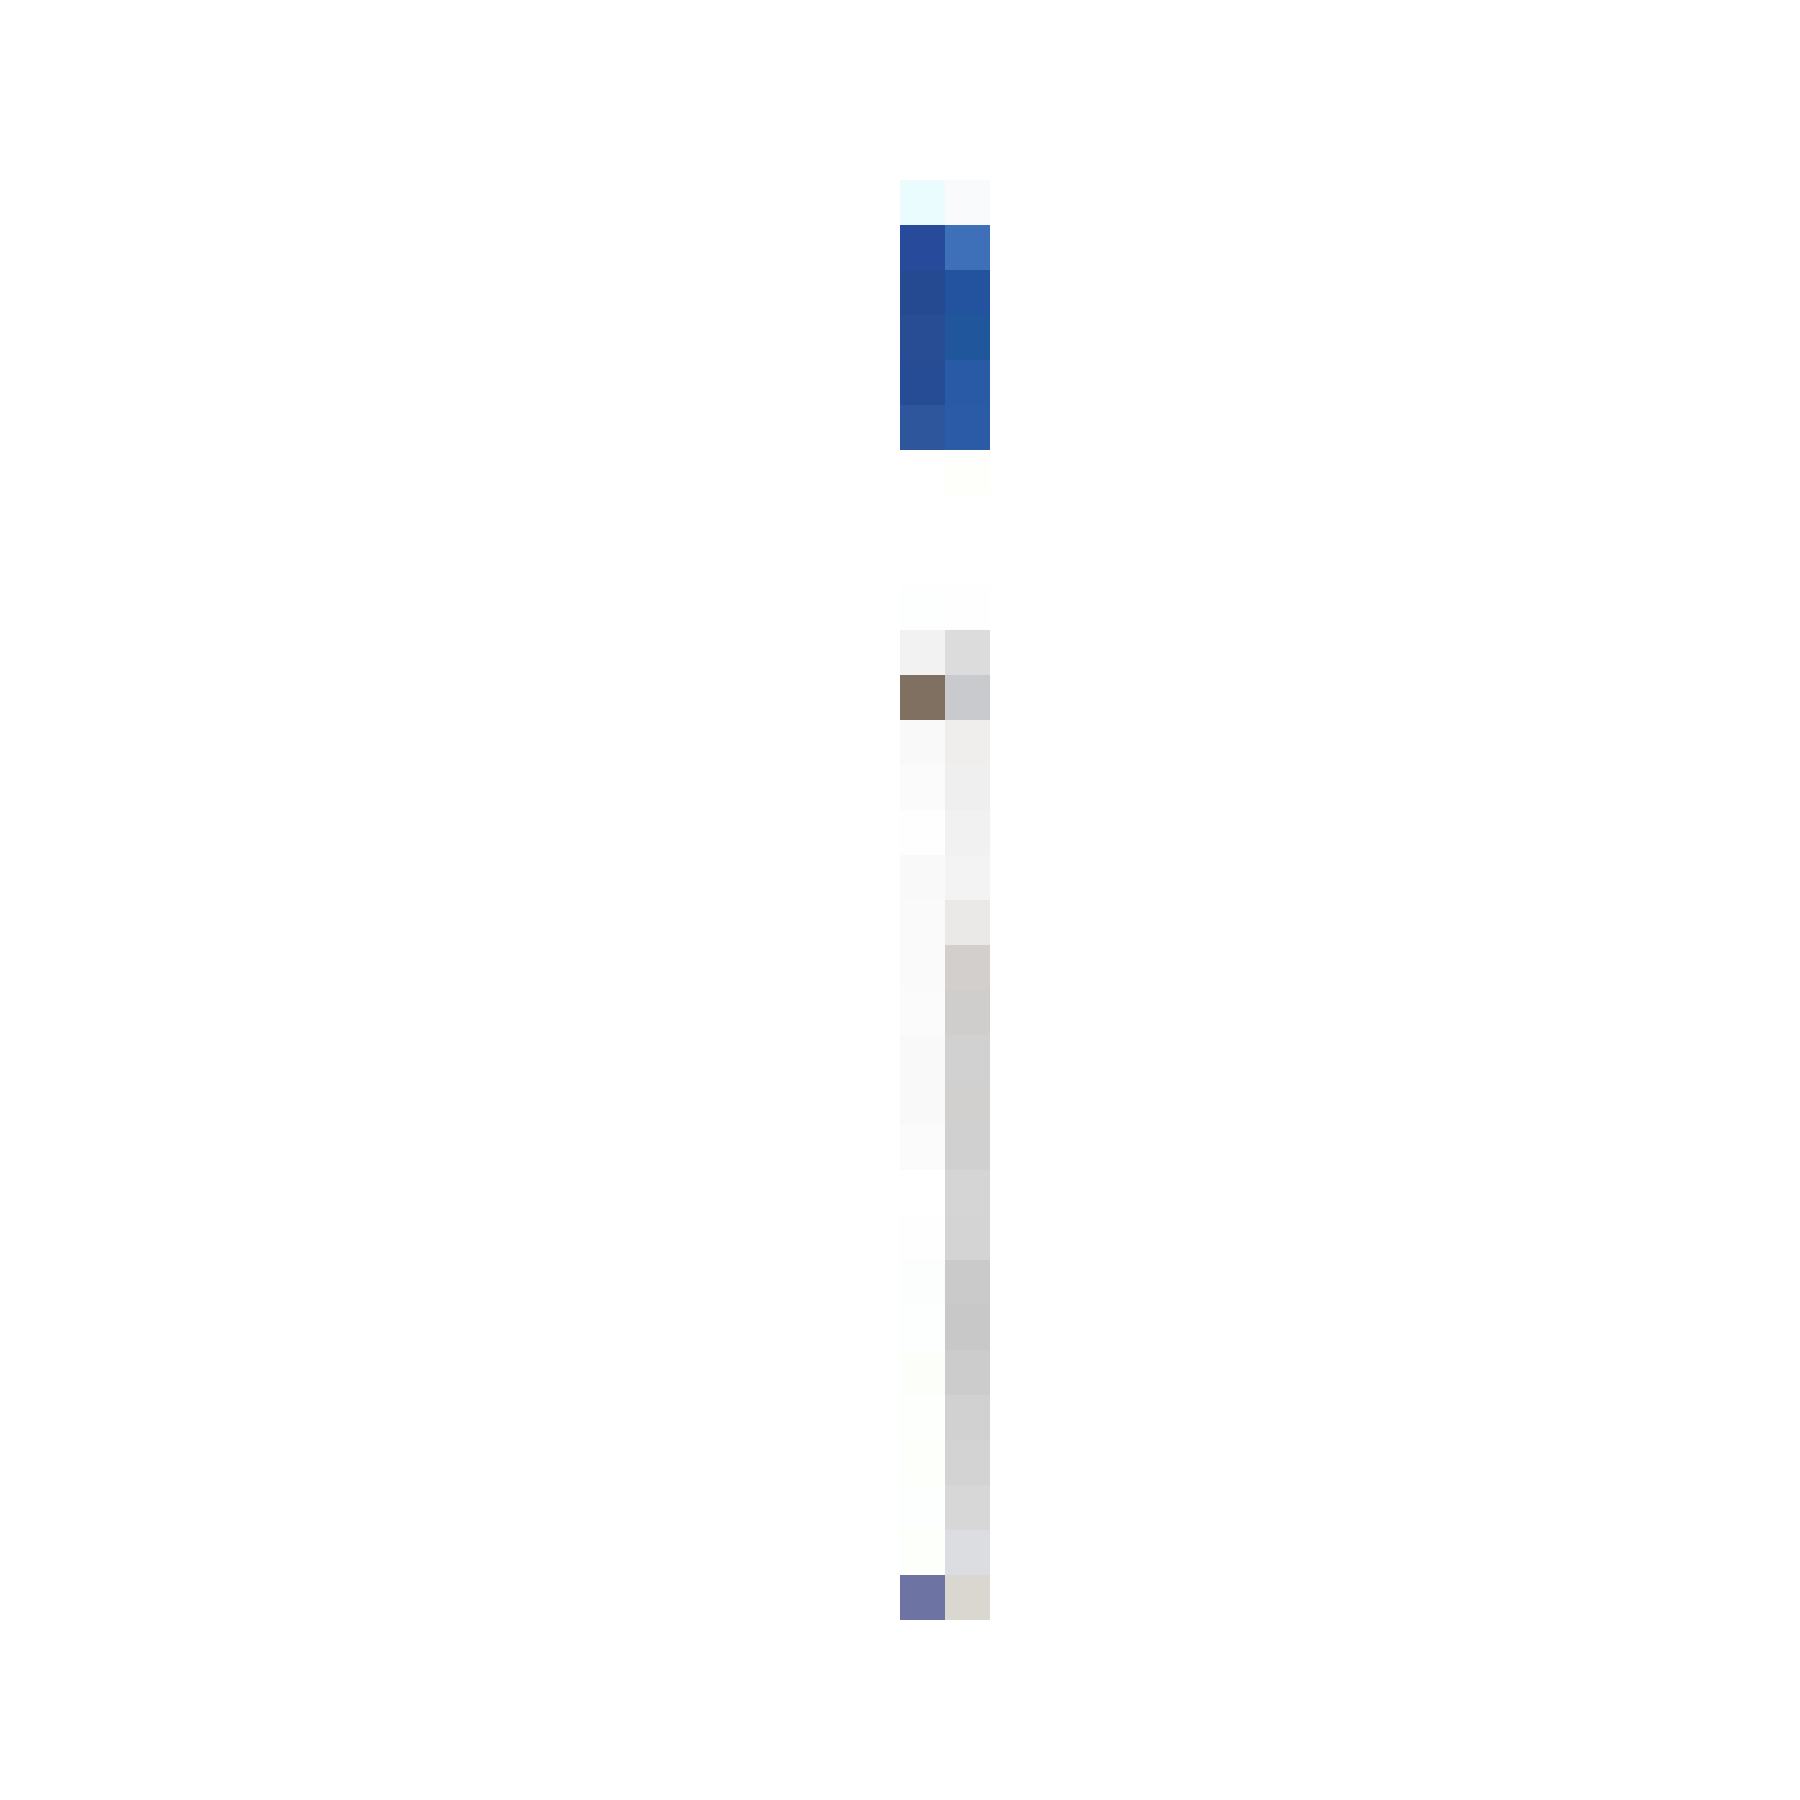 Lebensretter: Bic Cristal Kugelschreiber blau, Fr. 1.70/4 Stk., bei Coop.